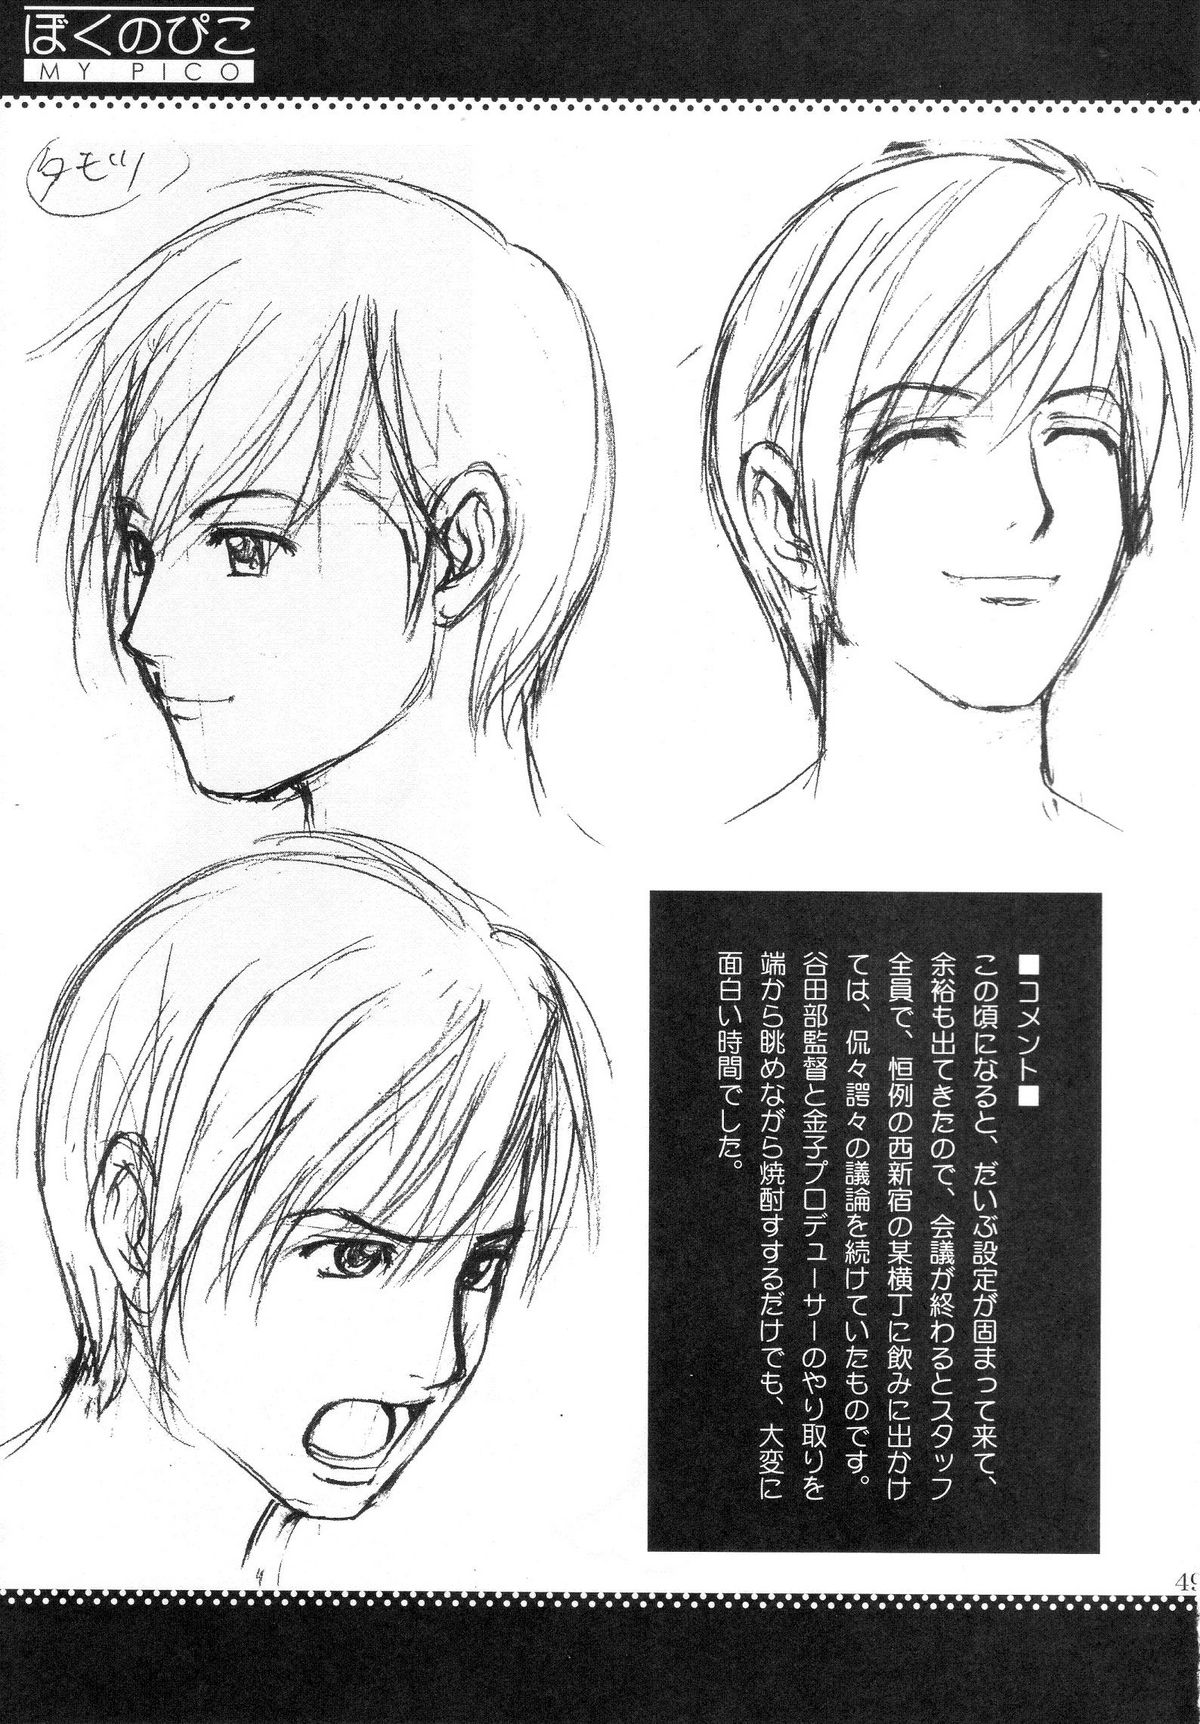 (COMIC1) [Saigado] Boku no Pico Comic + Koushiki Character Genanshuu (Boku no Pico) page 47 full